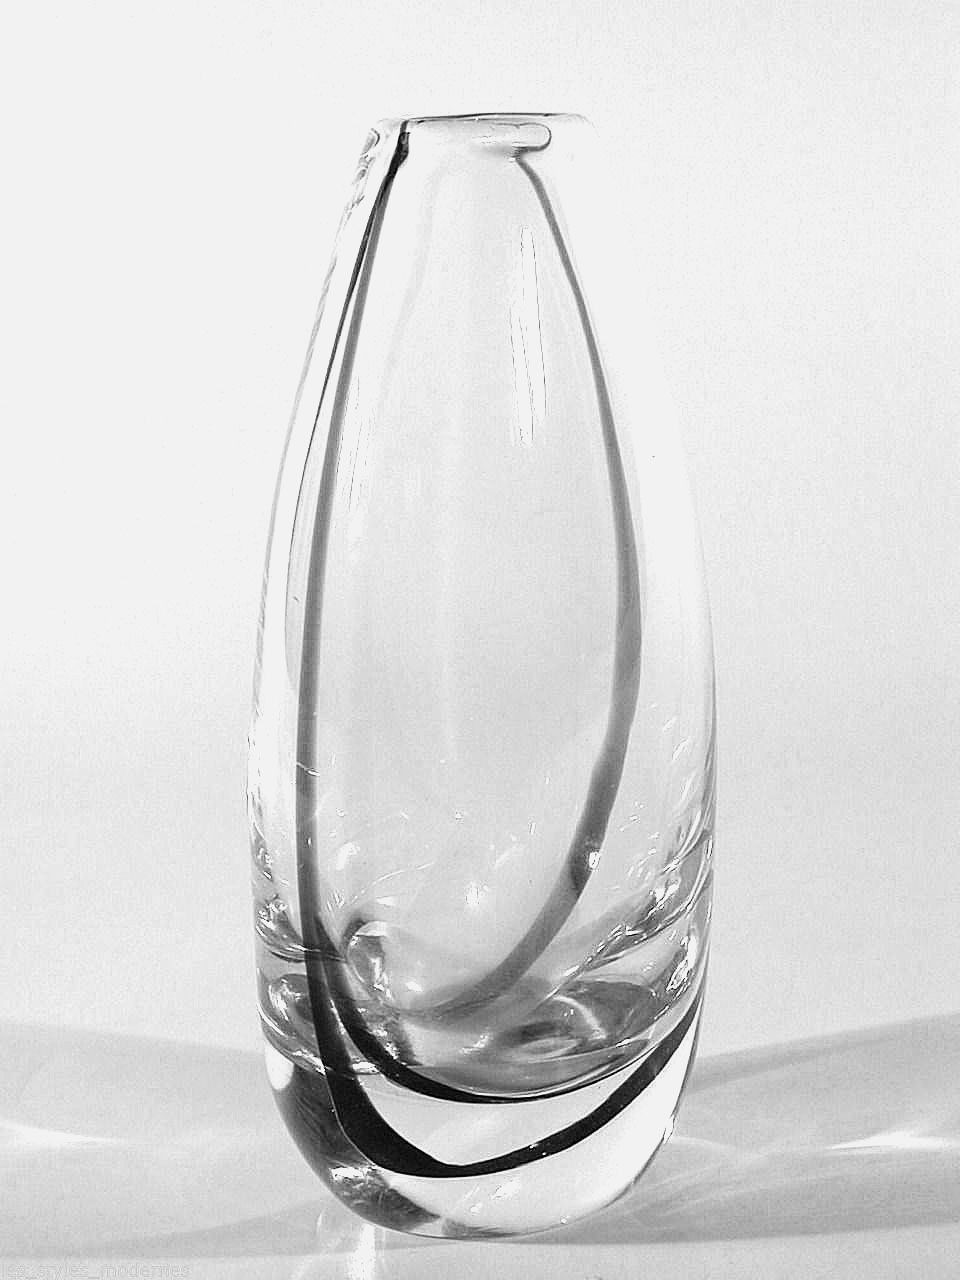 22 Famous Kosta Boda Glass Vase 2022 free download kosta boda glass vase of kosta glas vase a design vicke lindstrand a signiert a sweden art throughout 1 von 1 siehe mehr